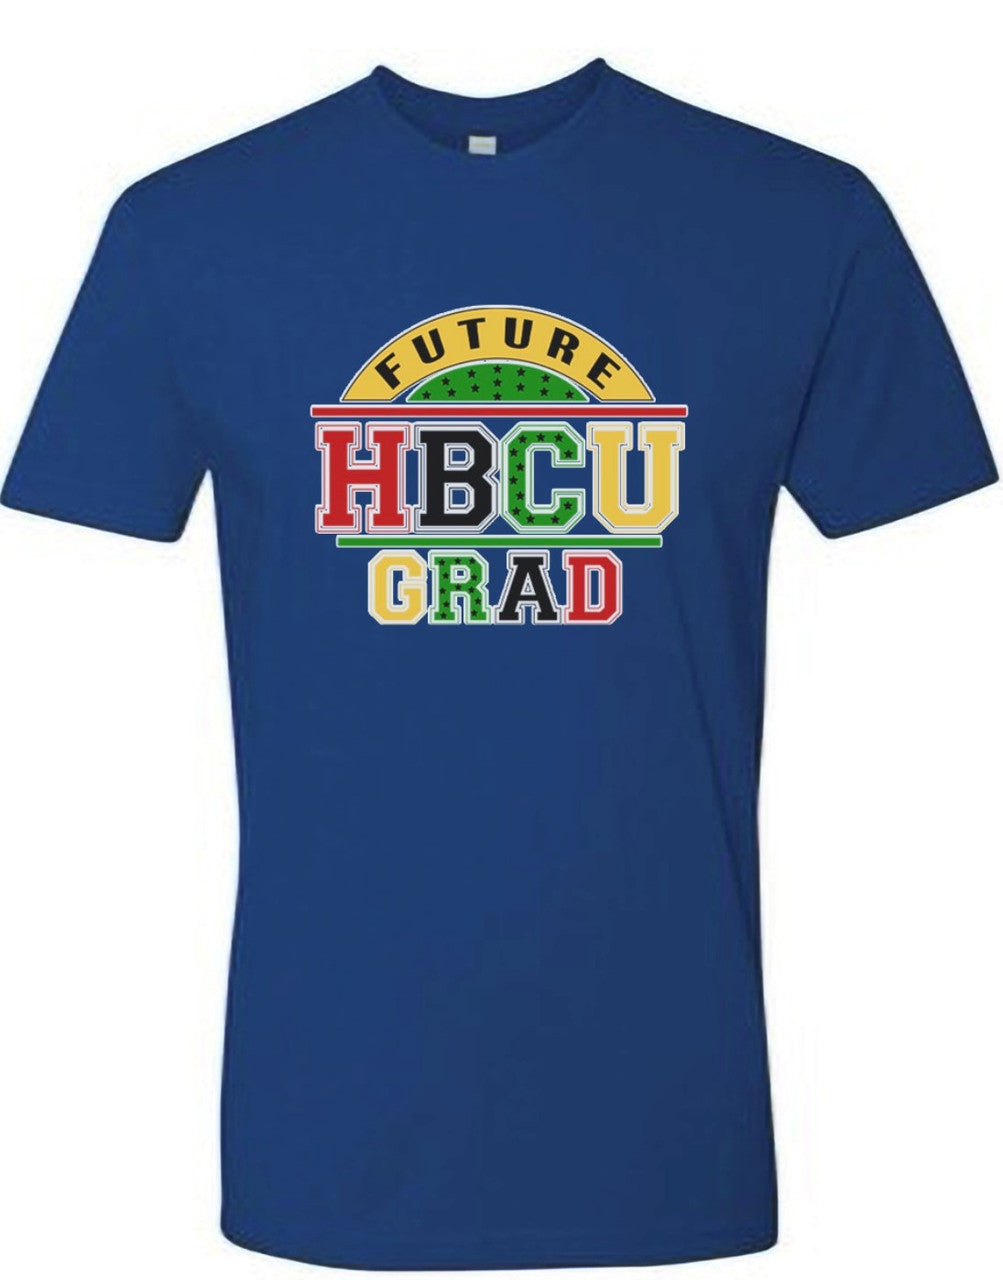 FUTURE HBCU GRAD- BLUE T-SHIRT